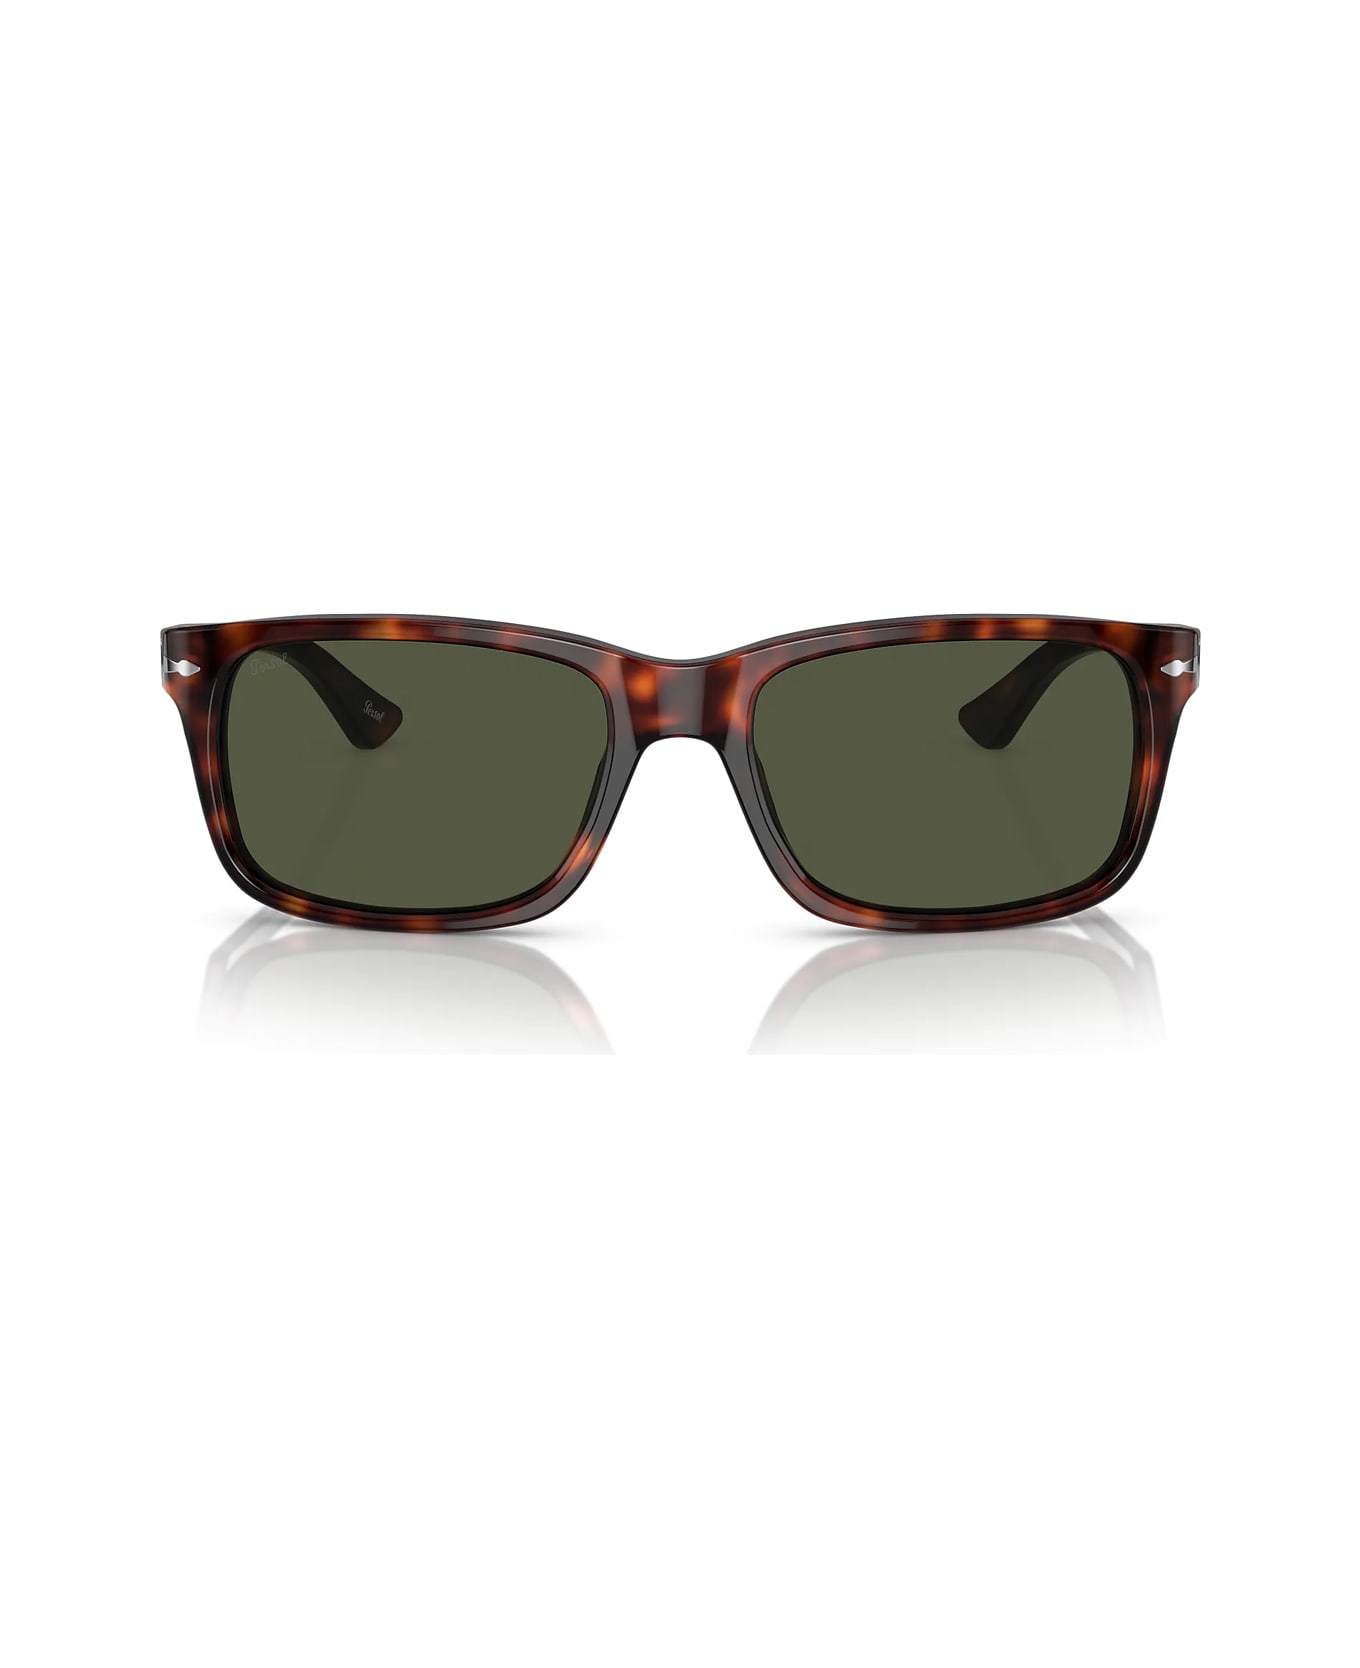 Persol Po3048s 24/31 Sunglasses - Marrone